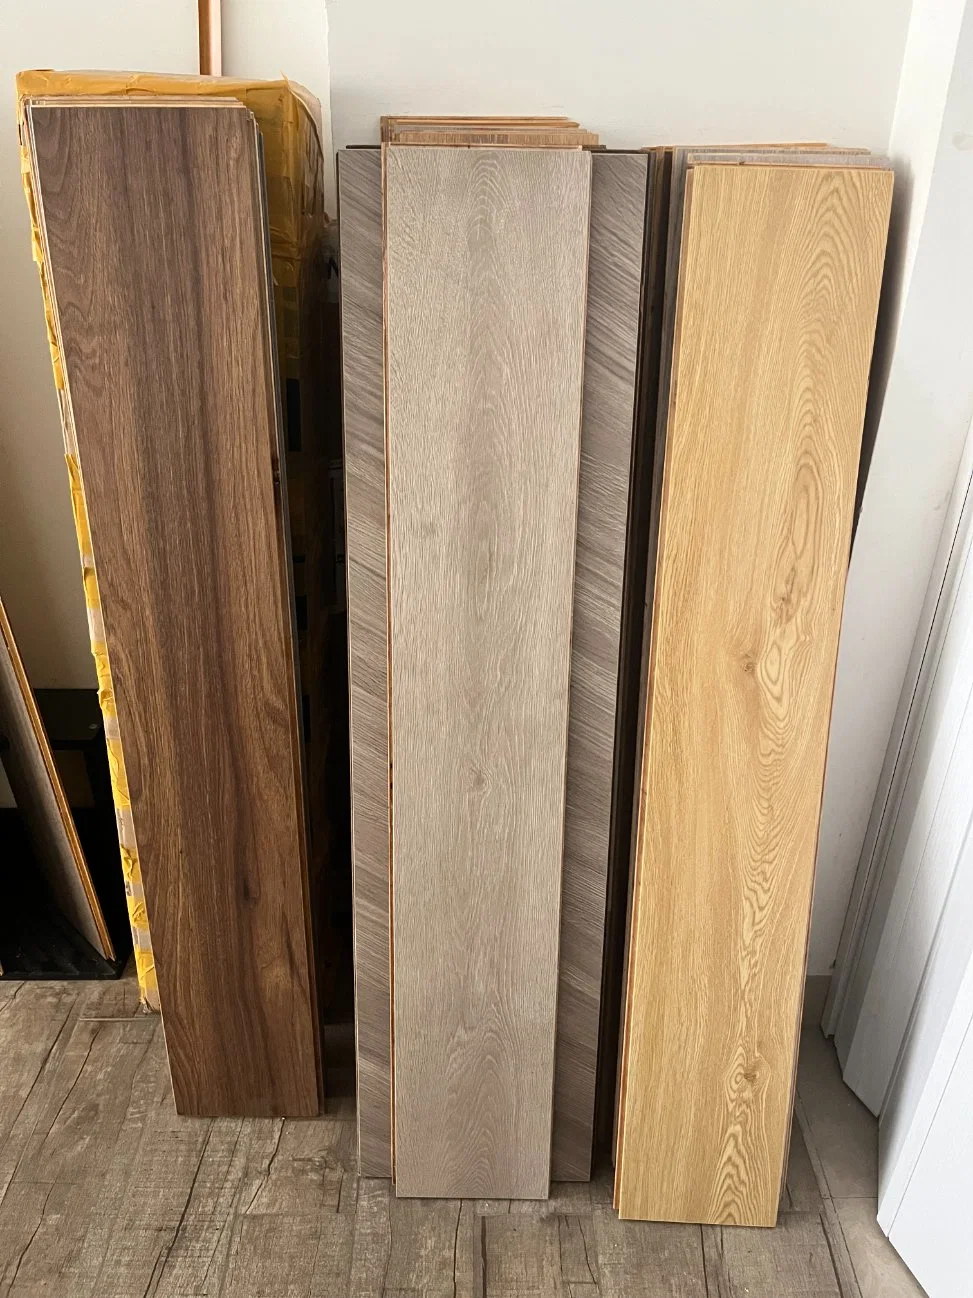 Eco-Friendly Wooden Oak Texture Engineered Indoor Decor Parquet Wood Flooring